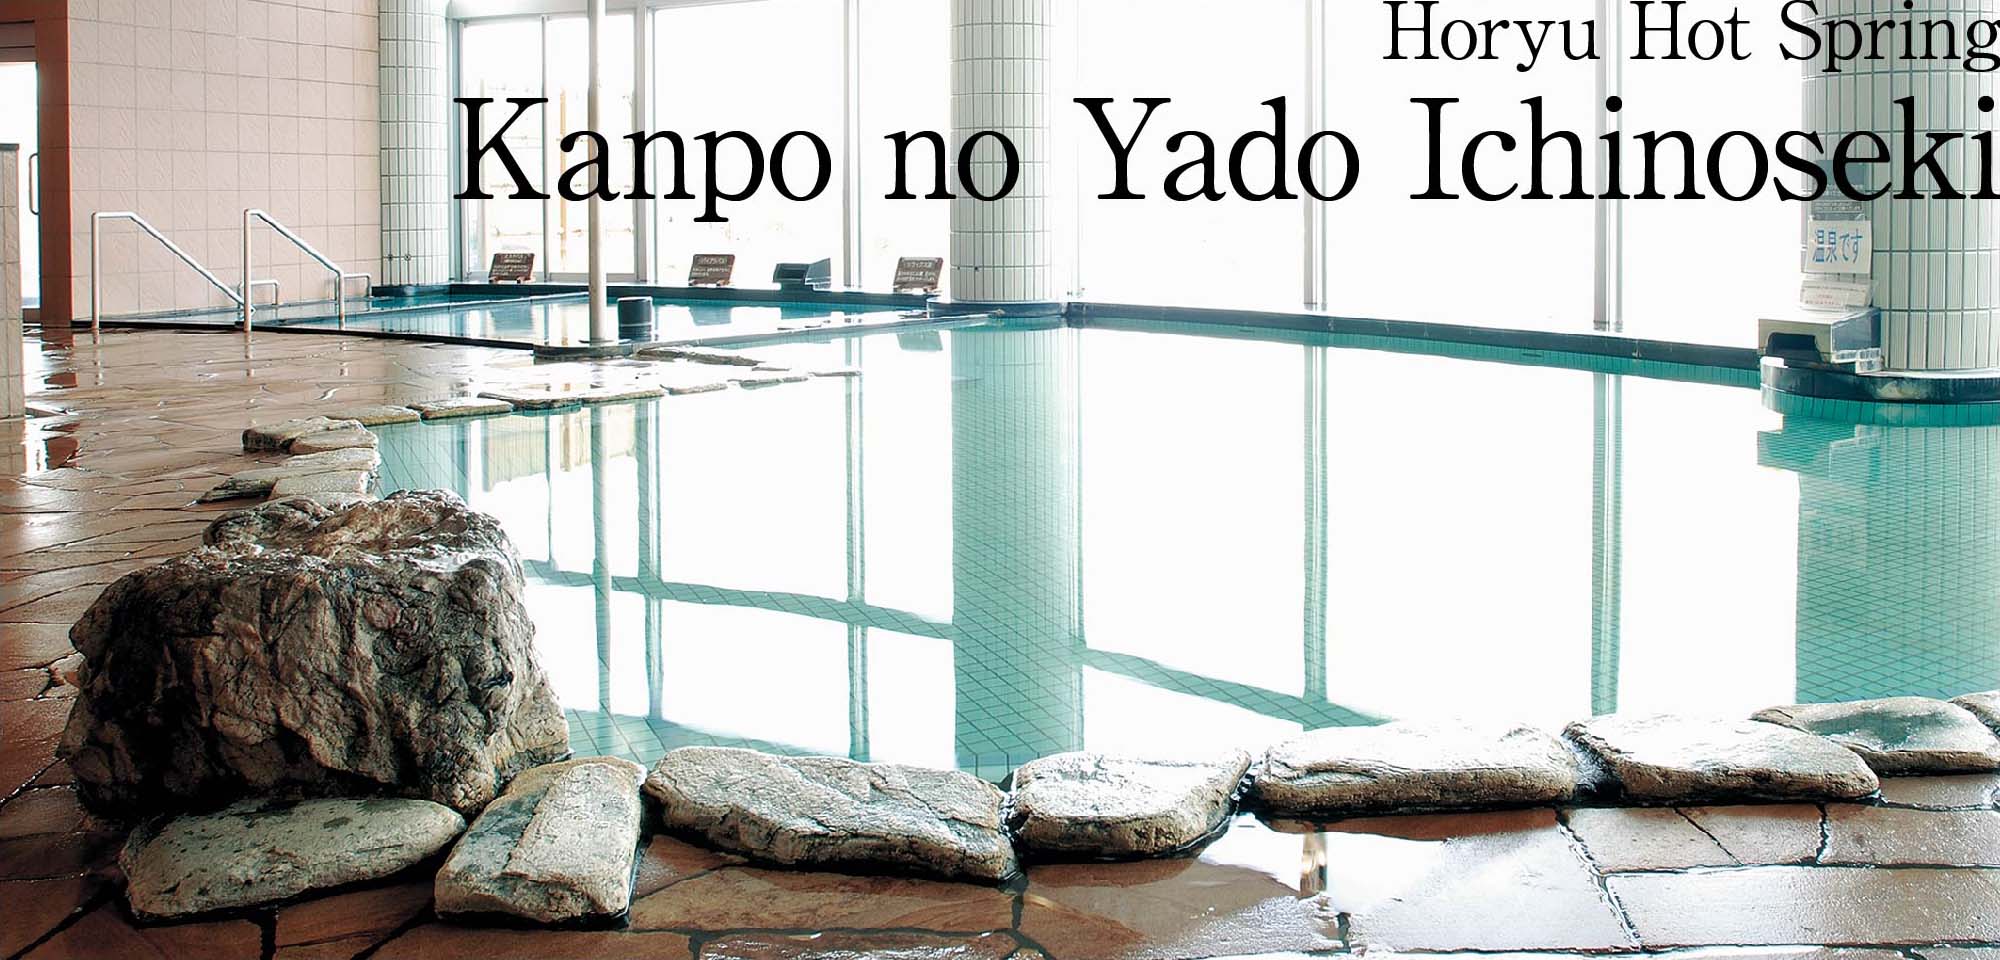 Horyu Hot Spring Kanpo no Yado Ichinoseki